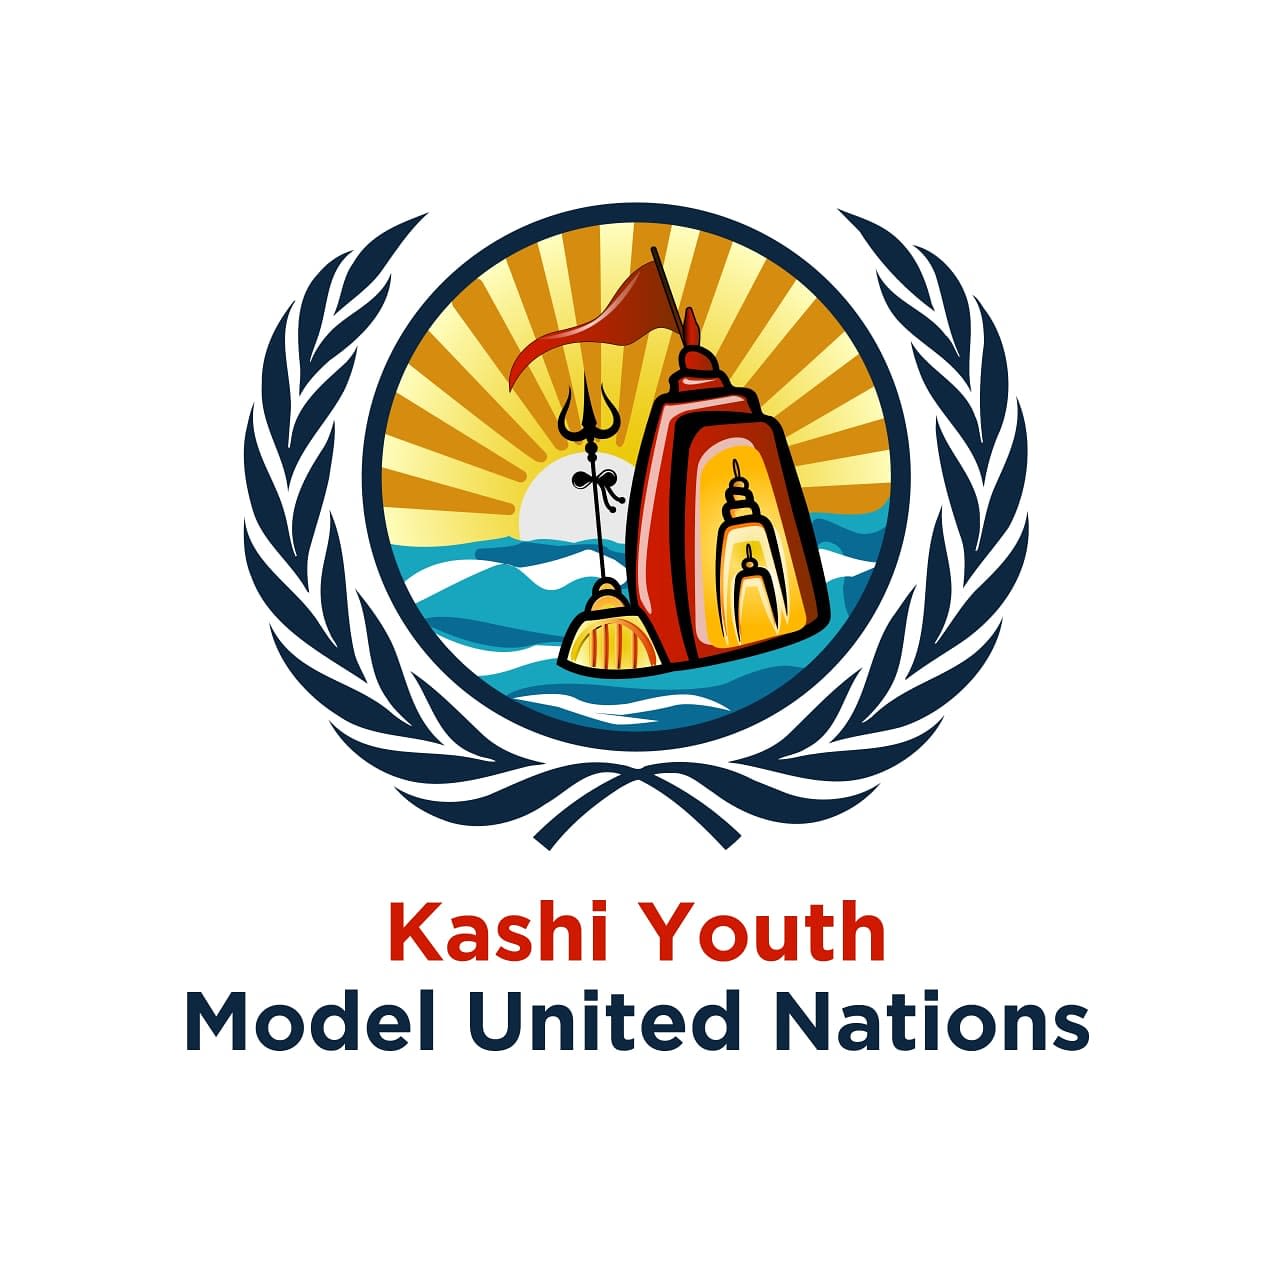 Kashi Youth Model United Nations